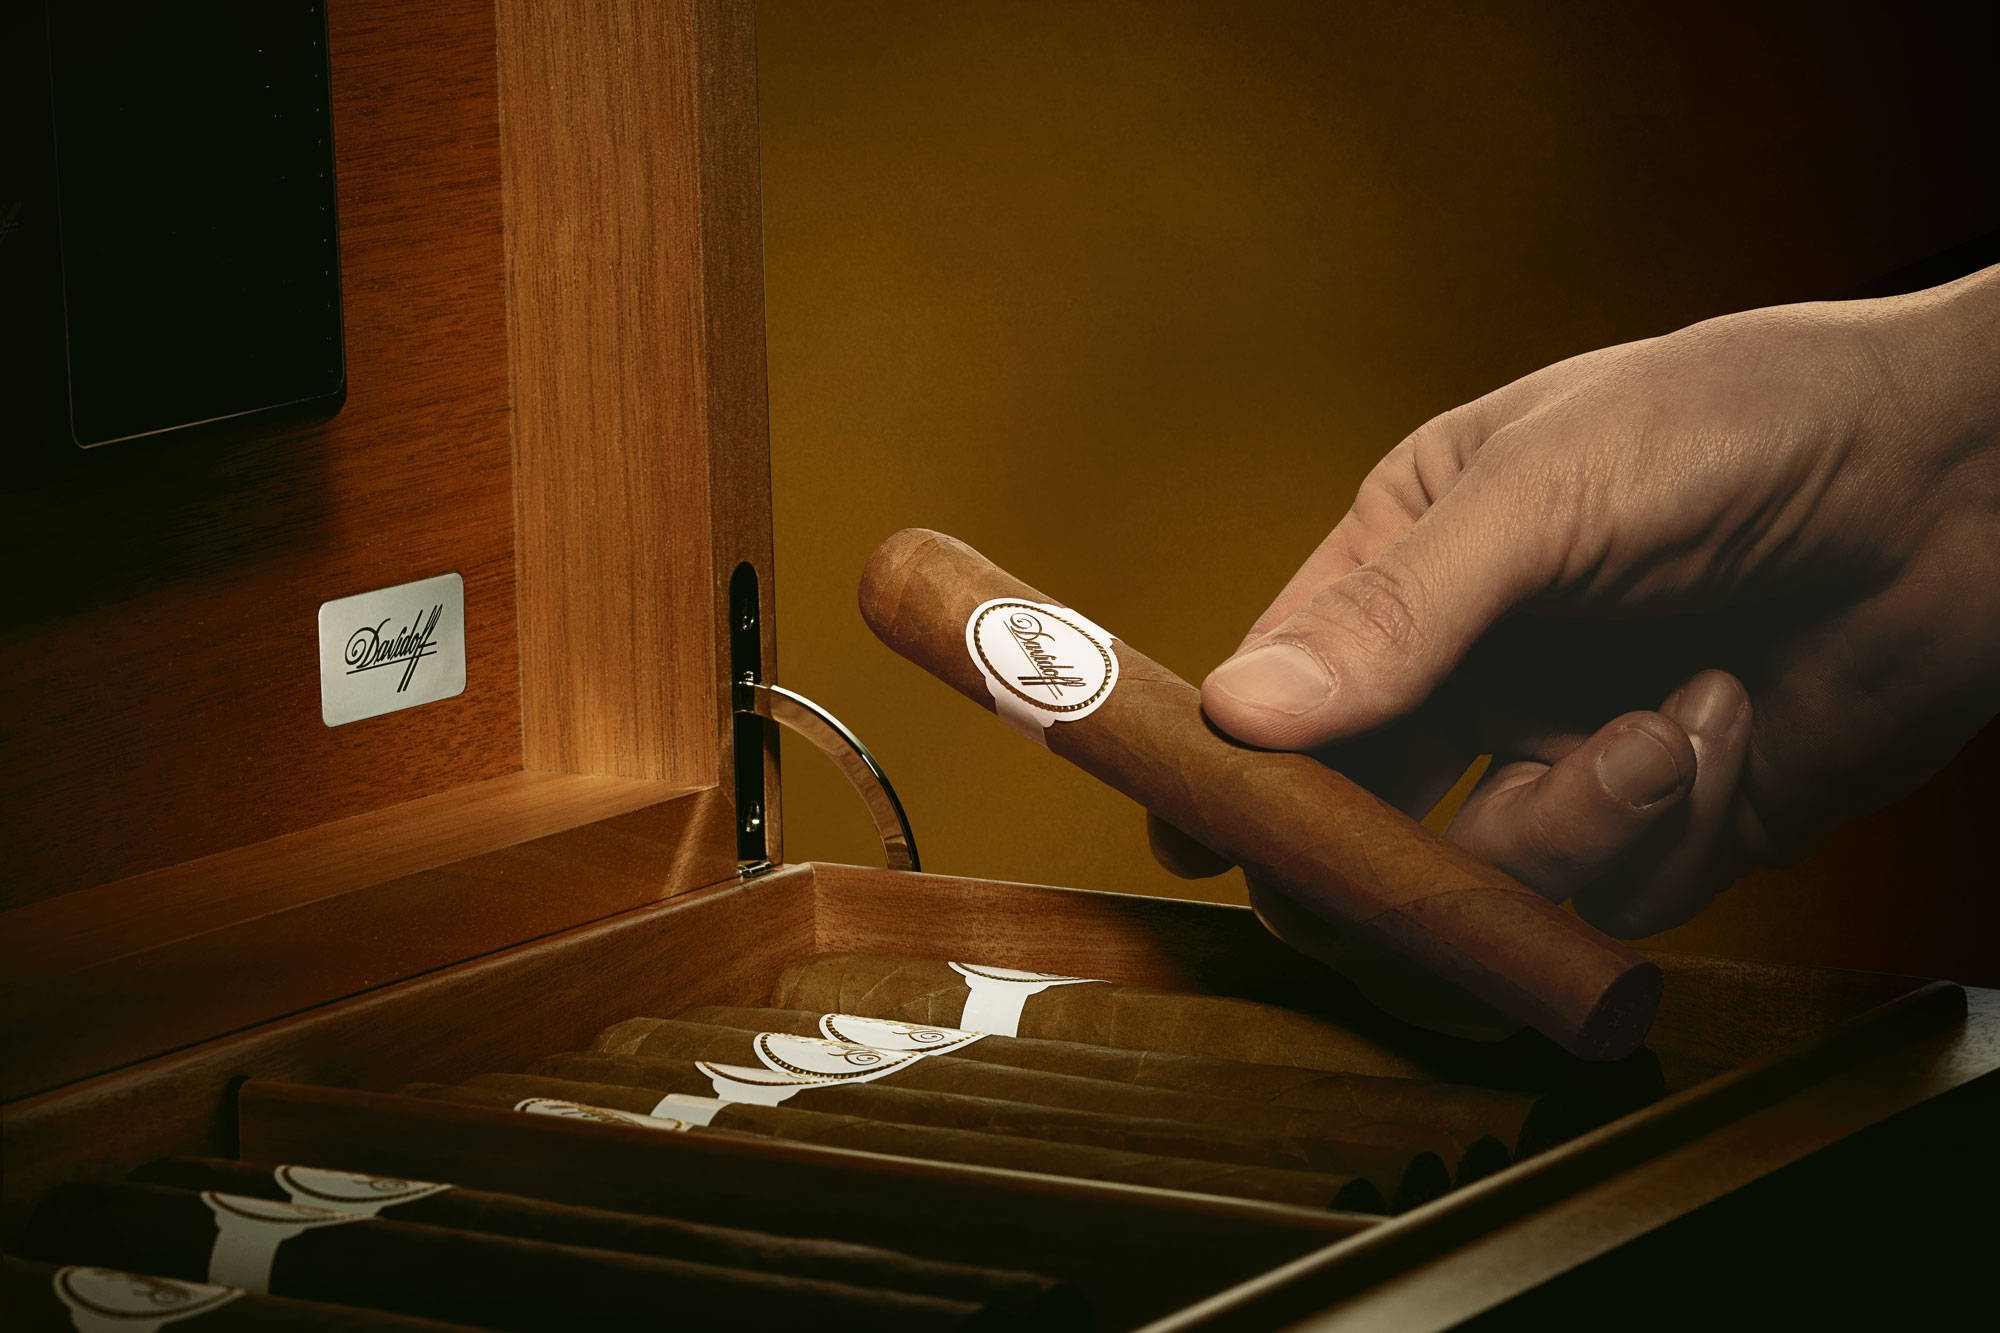 Auswahl – Nahaufnahme einer Hand, die eine Davidoff White Band Zigarre aus einer Holzkiste nimmt. 